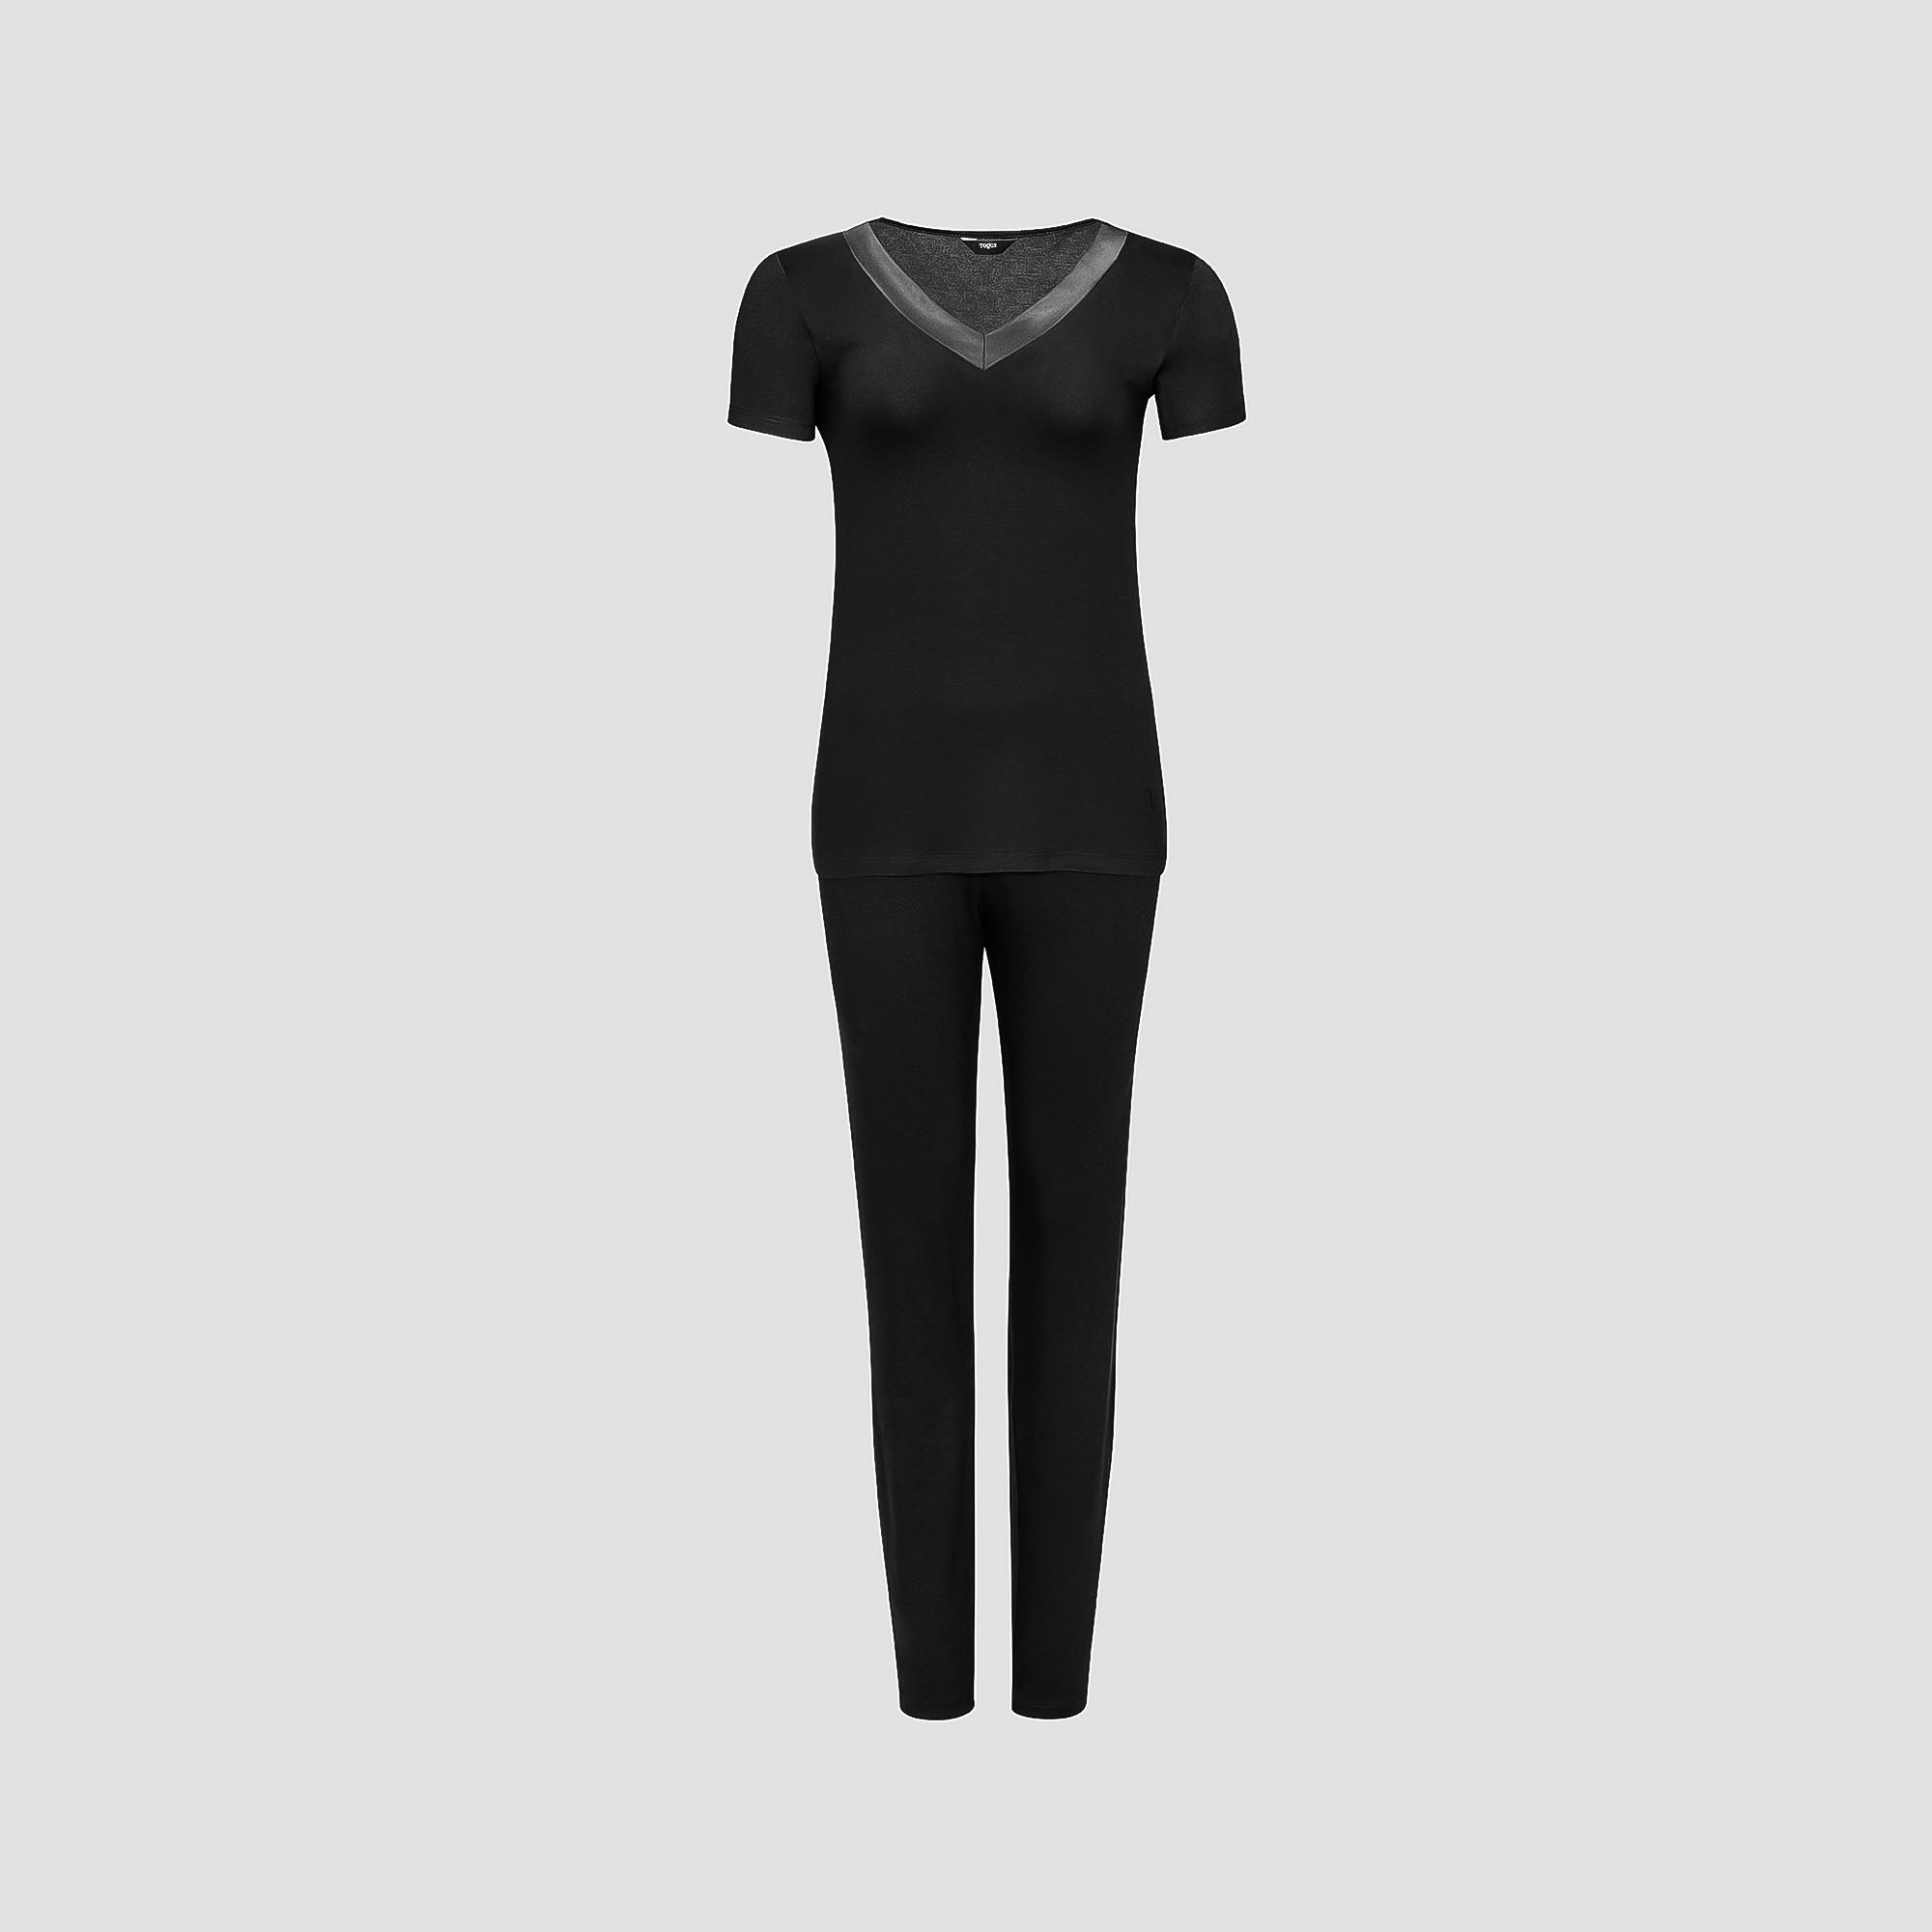 Пижама Togas Ингелла черная женская XL(50) 2 предмета жен пижама с шортами инь янь белый р 46